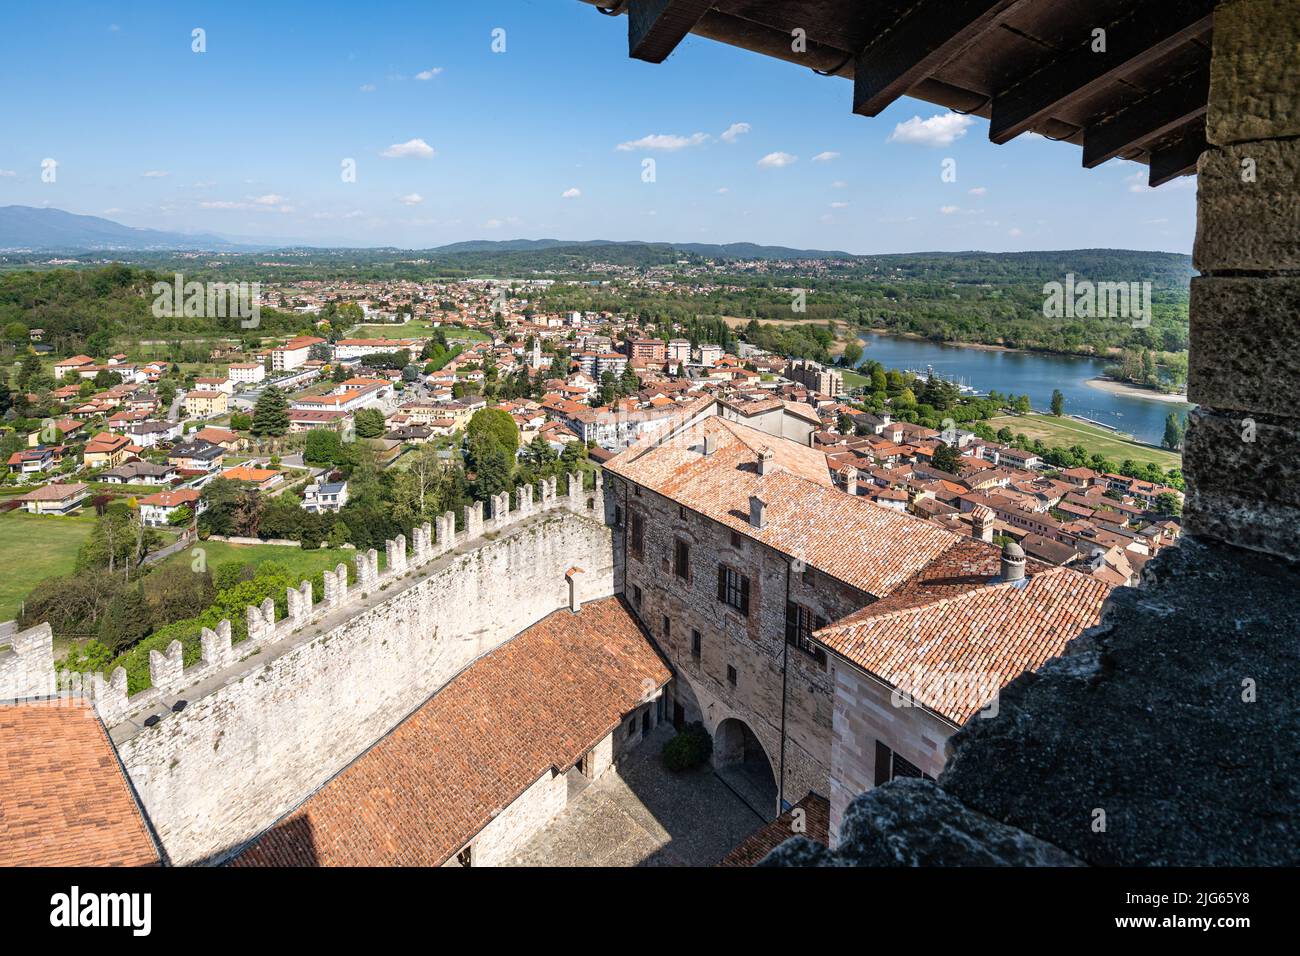 Vista panoramica dalla cima della Rocca di Angera sulle rive del Lago maggiore e circondata da una splendida campagna, Lombardia, Italia Foto Stock